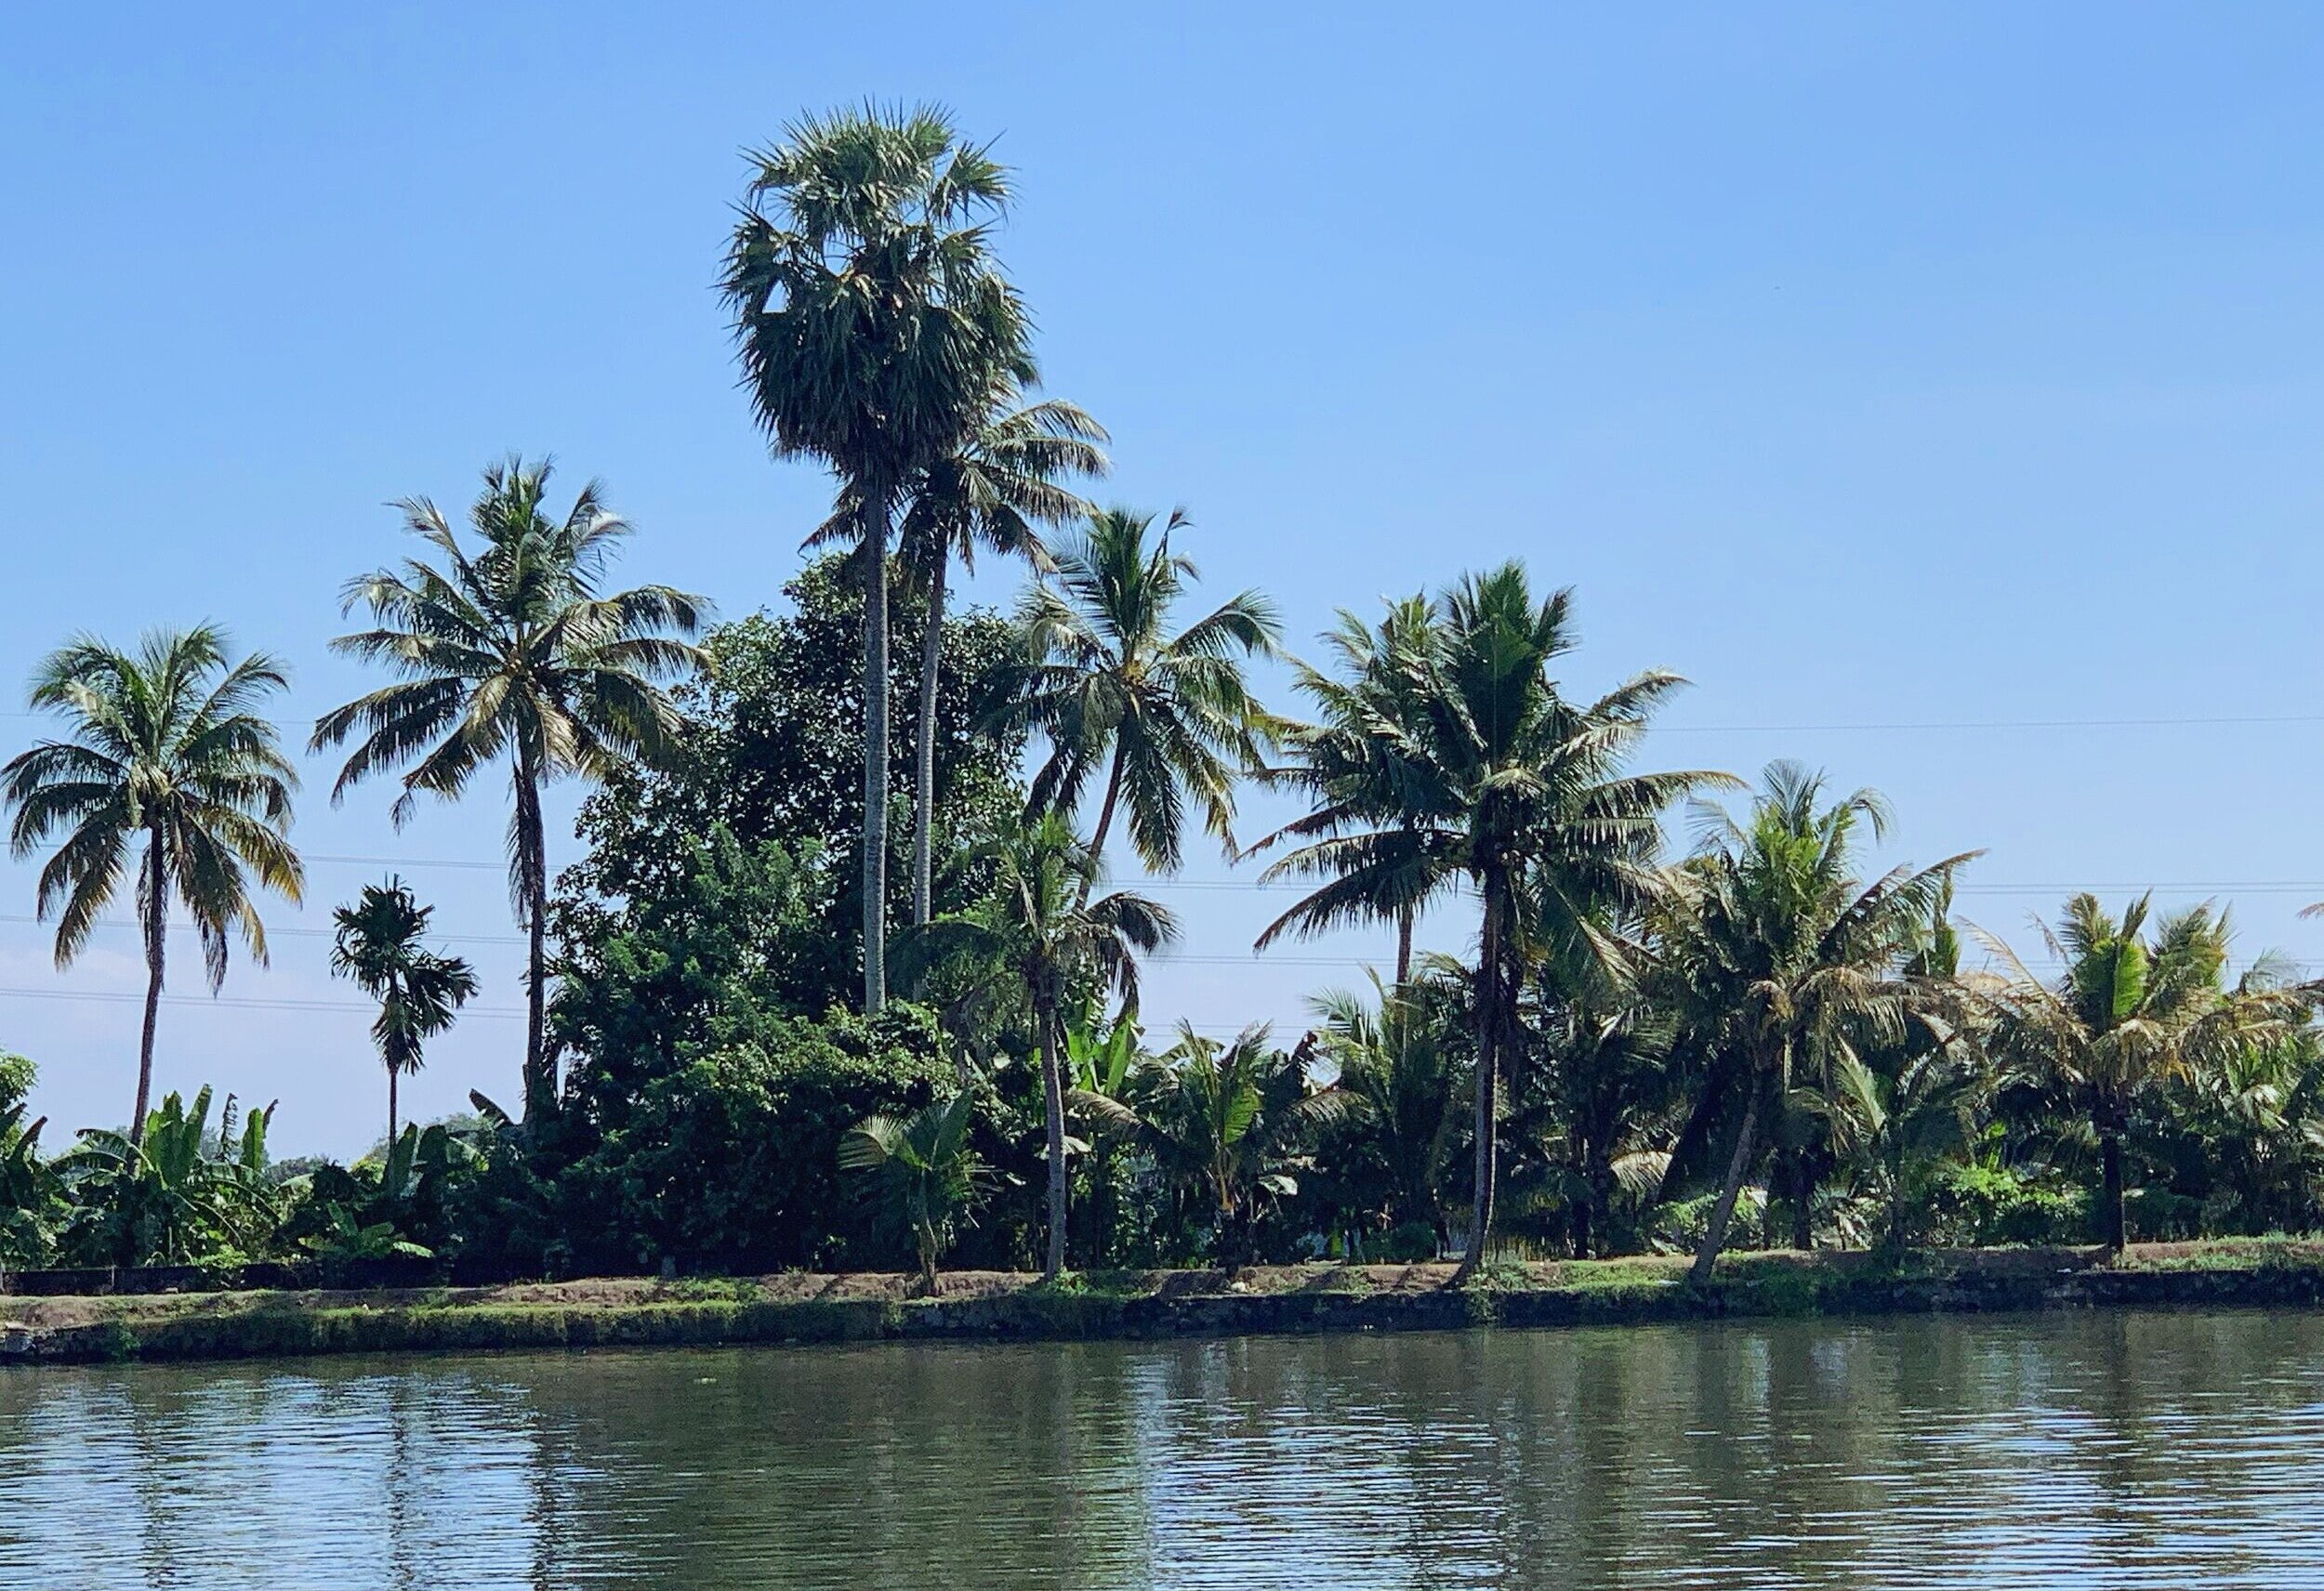 The beautifully serene backwaters....